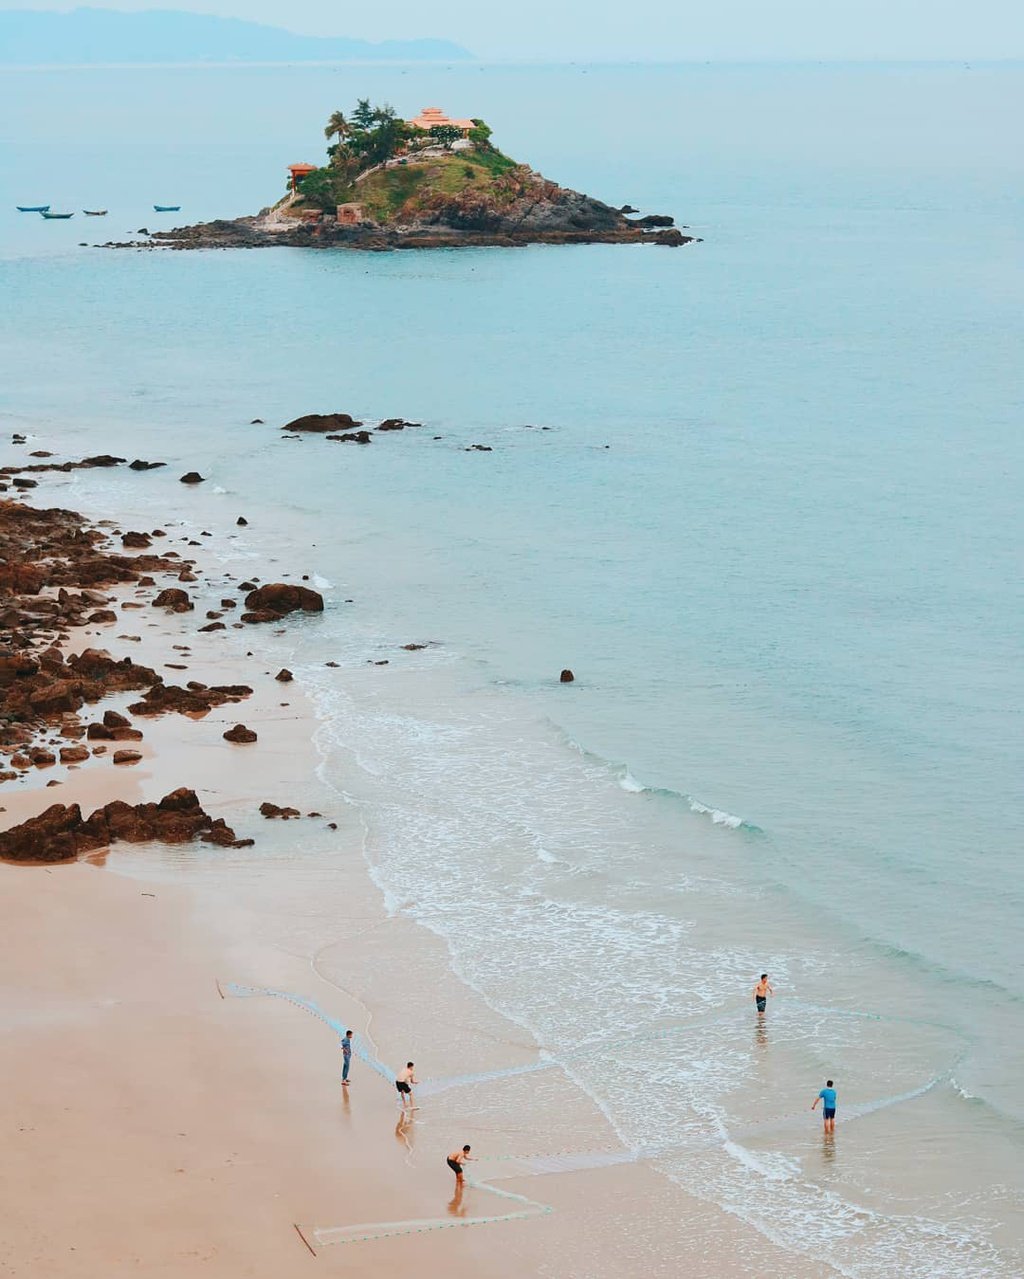 Sóng biển tại Nghinh Phong thường lớn nên bạn chỉ nên tắm gần bờ để đảm bảo an toàn.